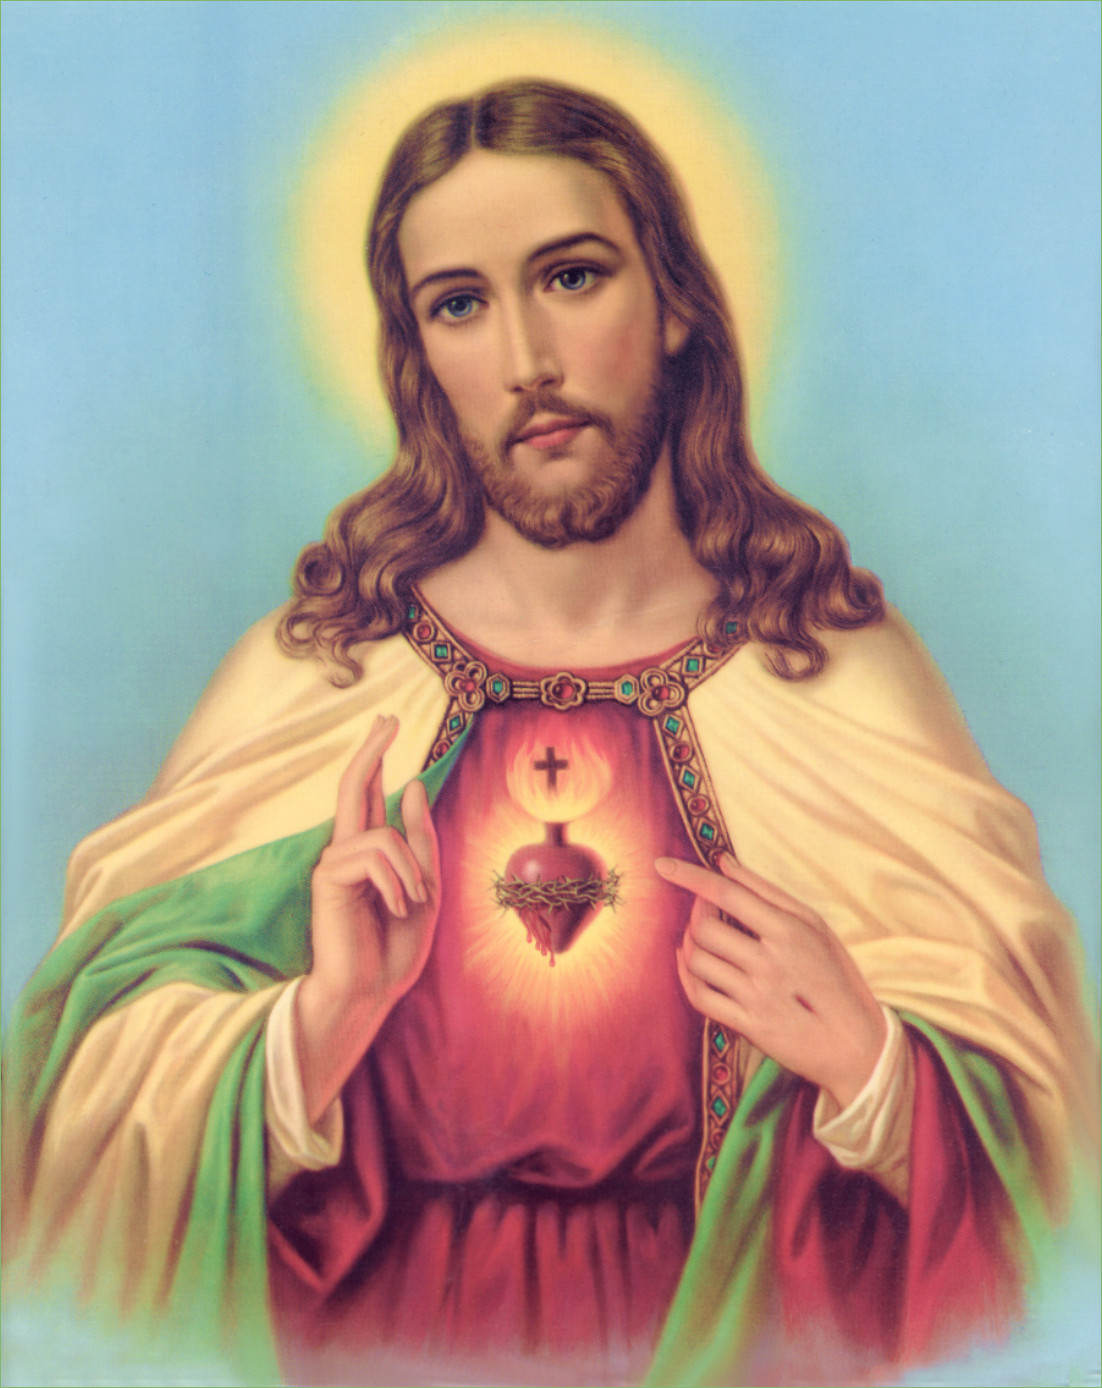 [60+] Sacred Heart Of Jesus Wallpapers | WallpaperSafari